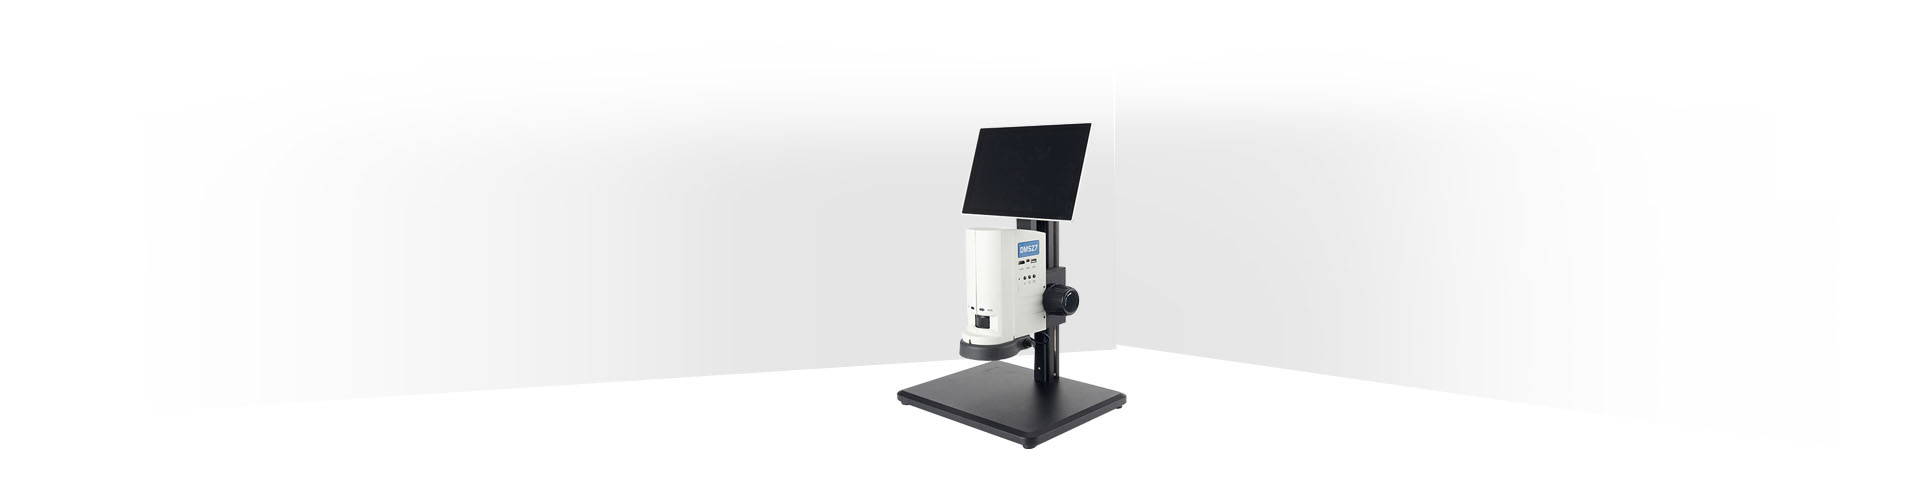 顕微鏡ステージ 顕微鏡作業ステージ、絶妙なアルミ合金顕微鏡XY移動ステージデジタル顕微鏡実体顕微鏡用の取り外し可能な測定作業スタンド - 9